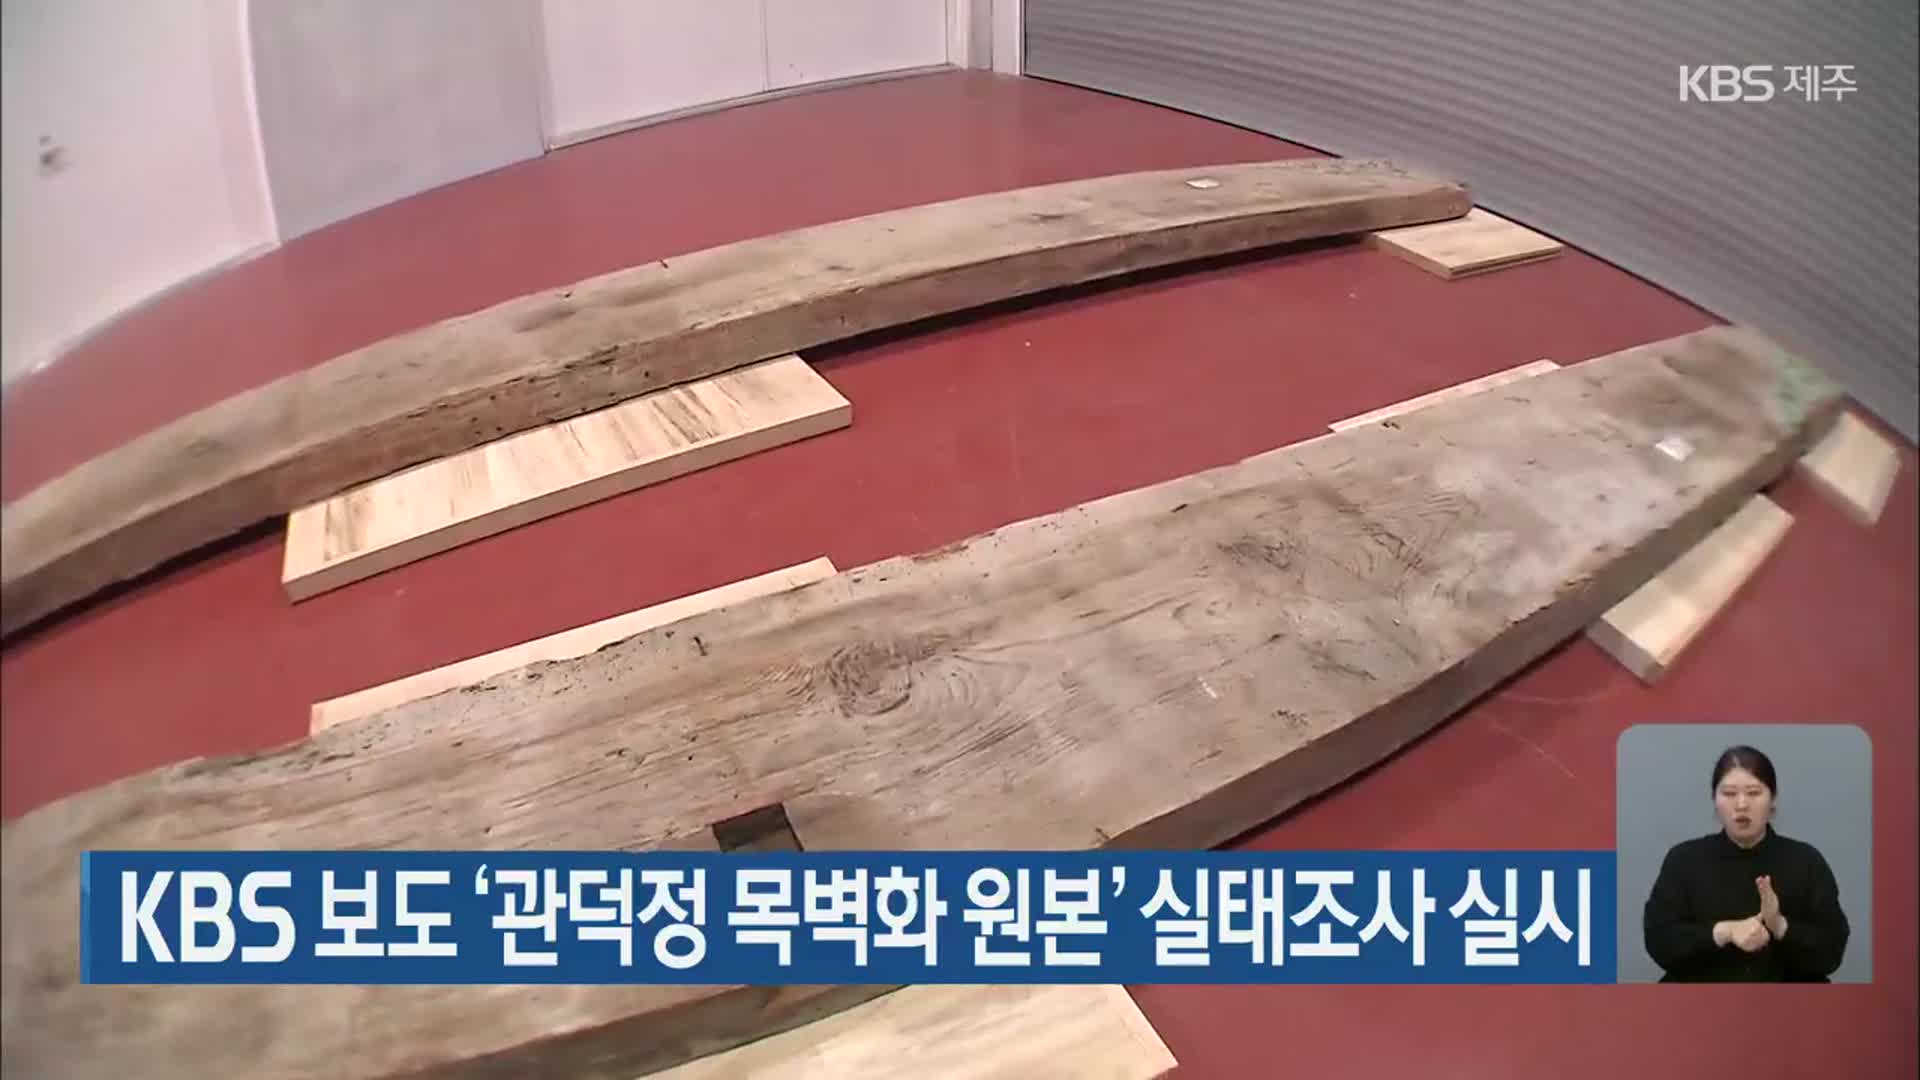 KBS 보도 ‘관덕정 목벽화 원본’ 실태조사 실시